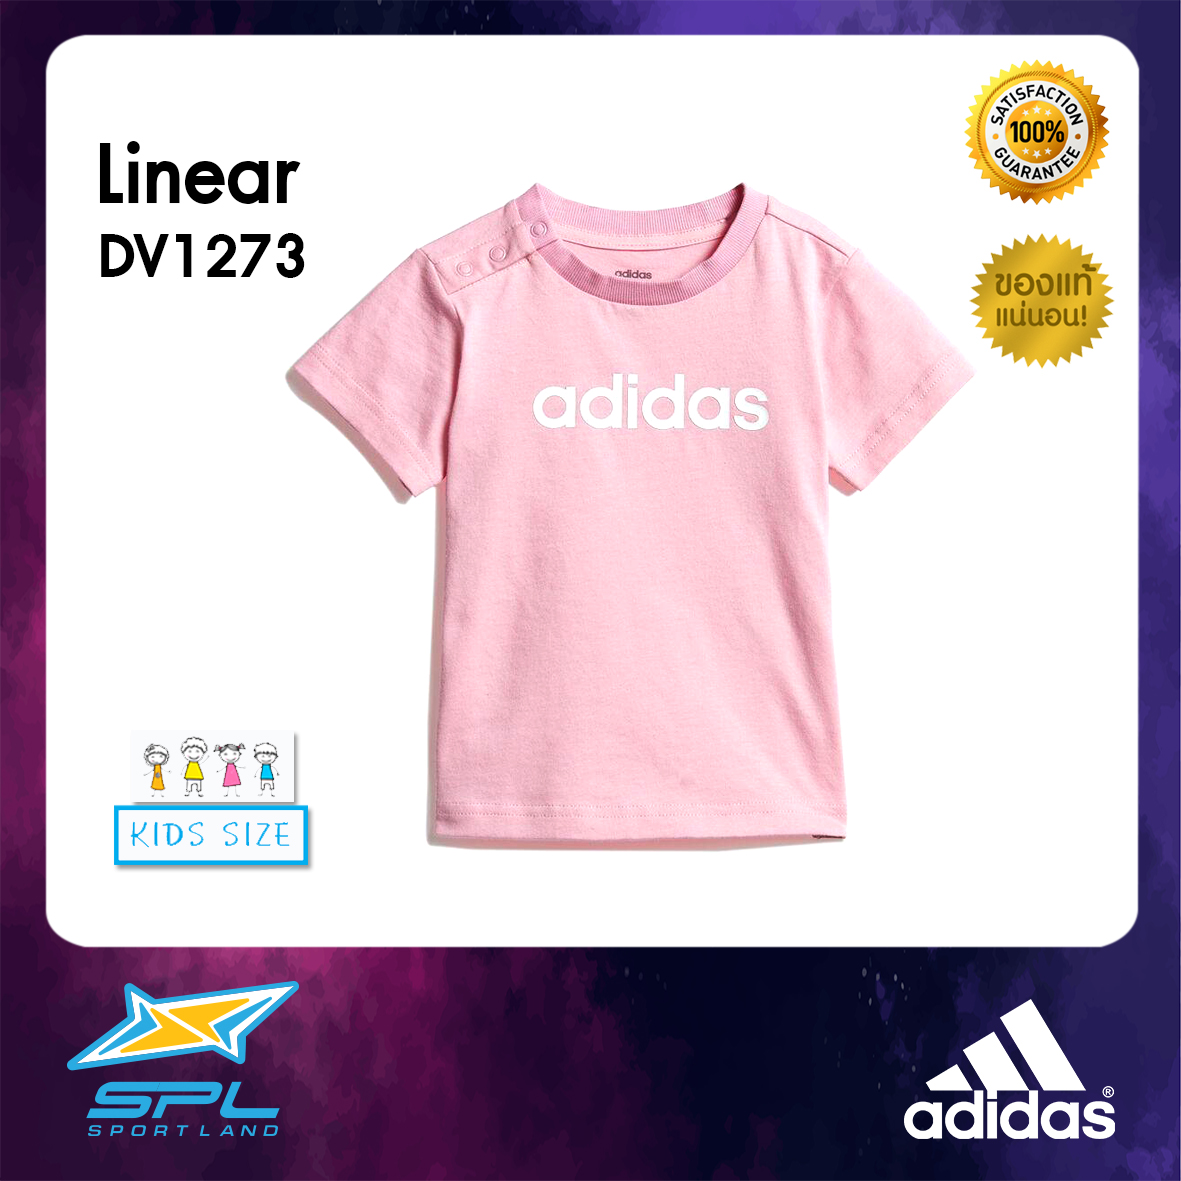 Adidas เสื้อคอกลม เสื้อกีฬาเด็กผู้หญิง เสื้อแฟชั่น เสื้อเด็กผู้หญิง อาดิดาส AT Infant Girl T-Shirt Linear TEE DV1273 P(700)